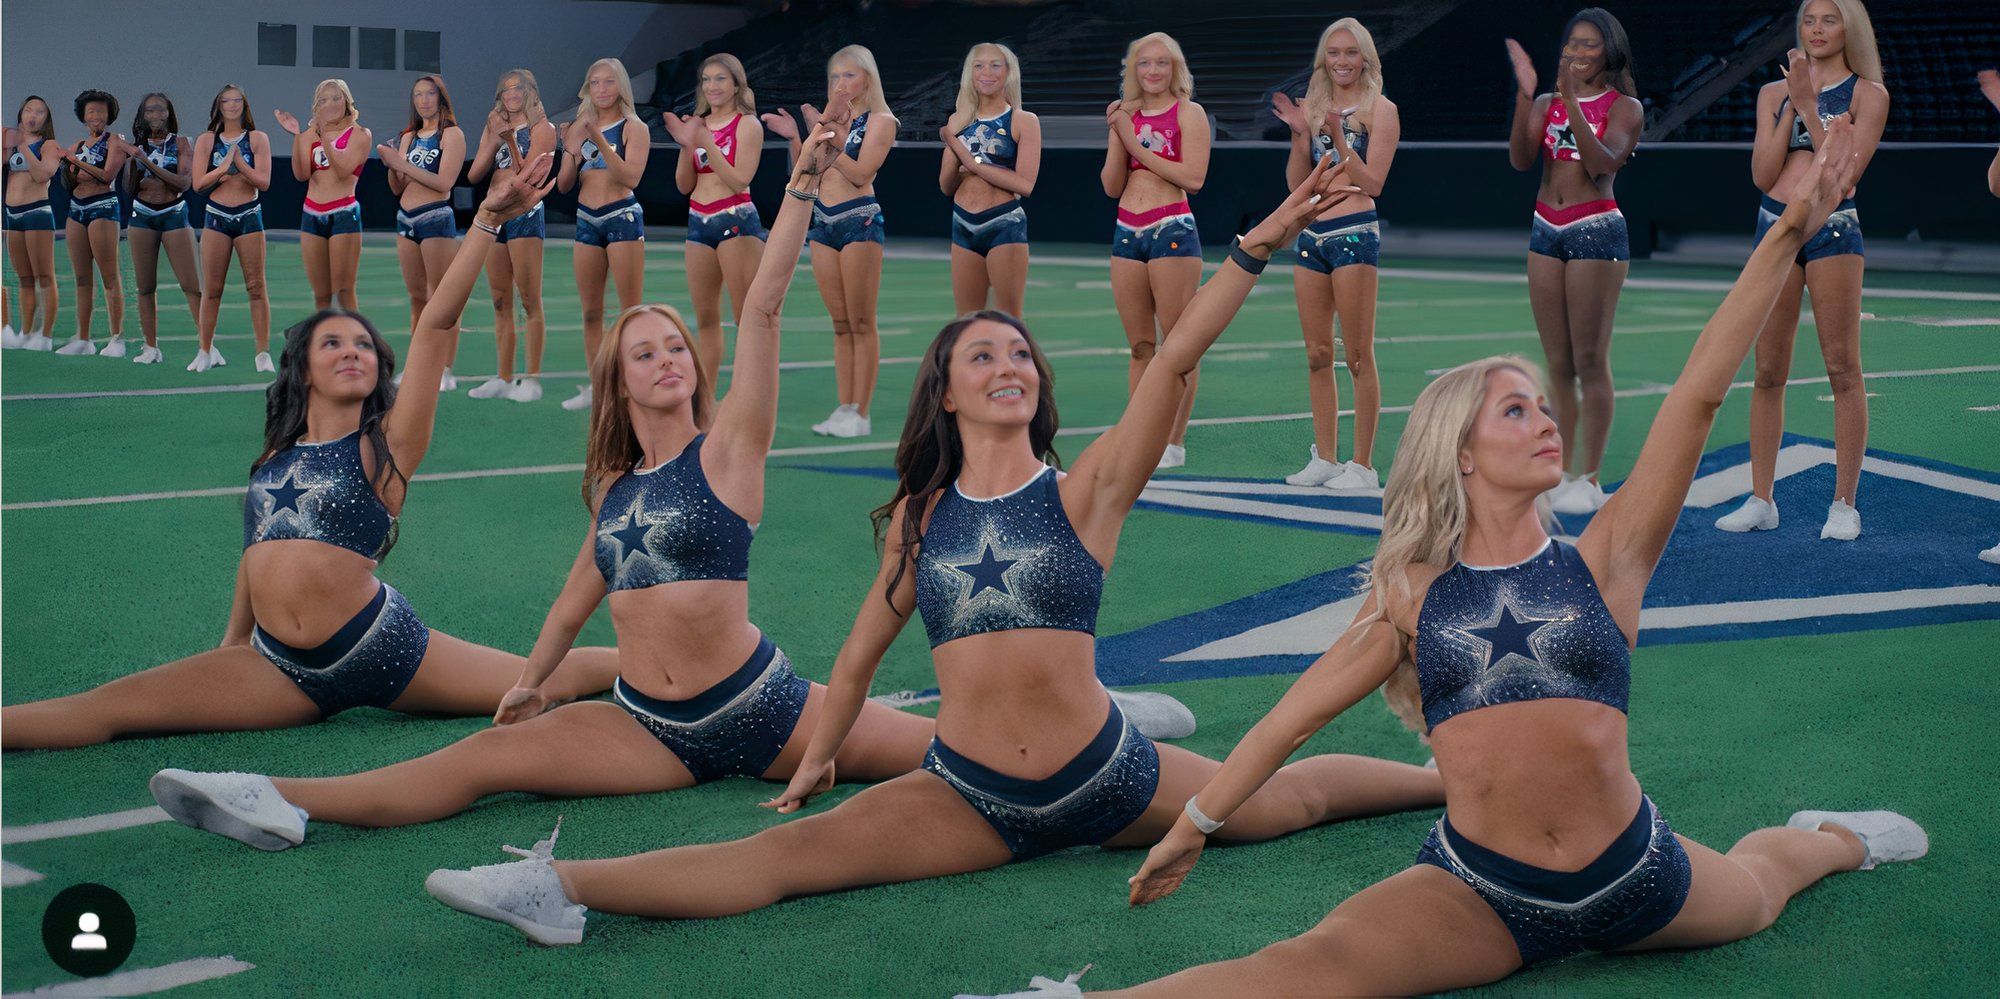 Queridinhas da América: Líderes de torcida do Dallas Cowboys fazendo espacate no campo enquanto outras líderes de torcida aplaudem atrás delas